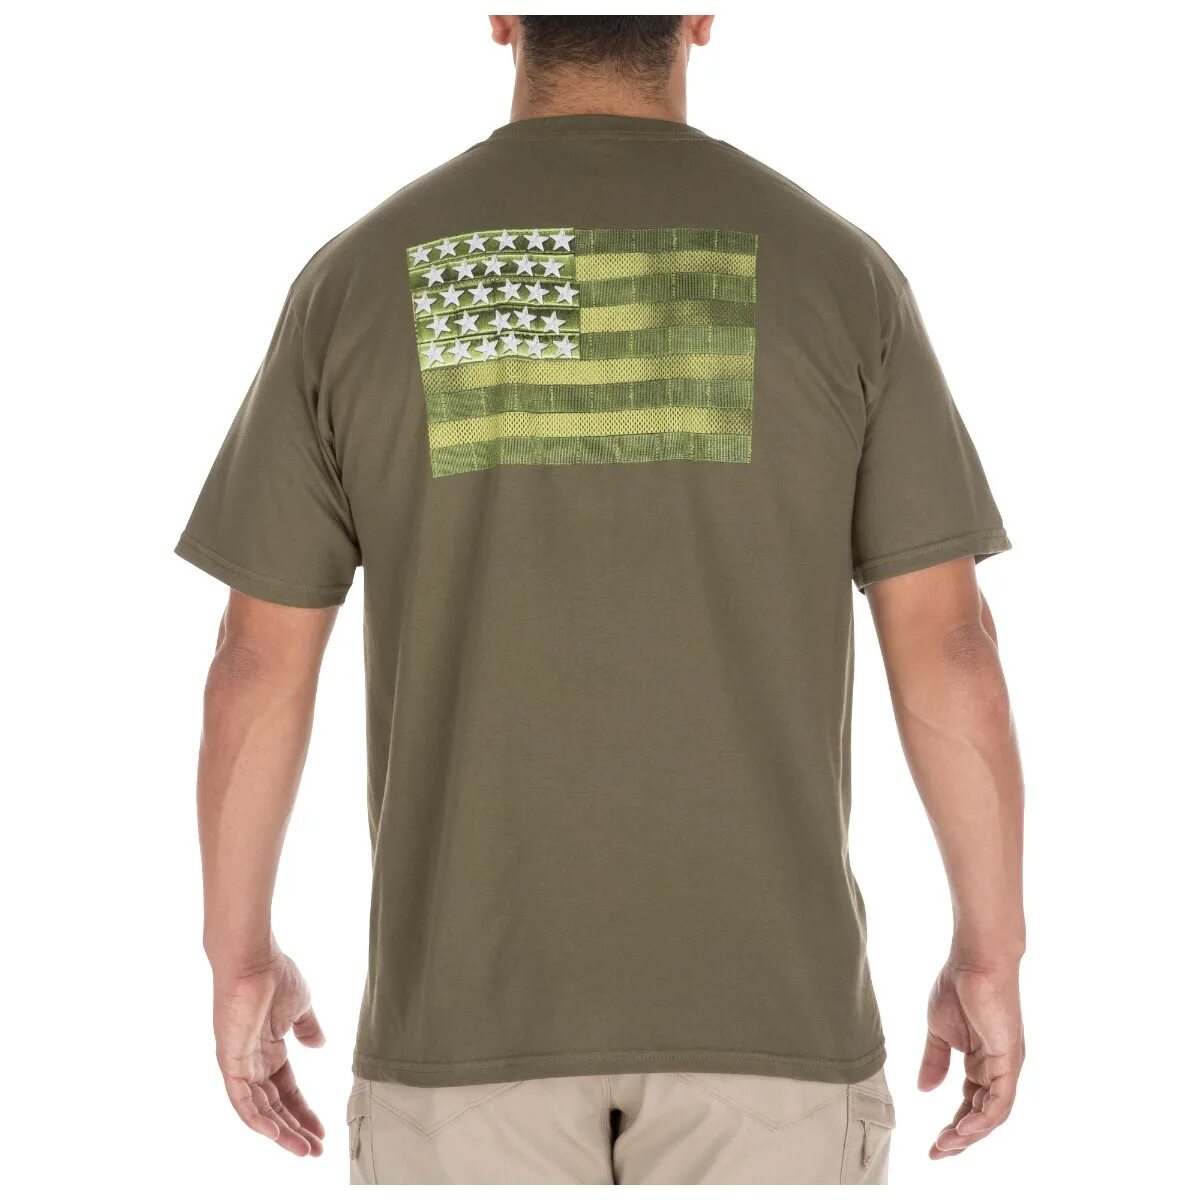 5.11 Tactical футболка. 5.11 Tactical поло. 5.11 Tactical Military Green. Футболка 5.11 Tactical олива.